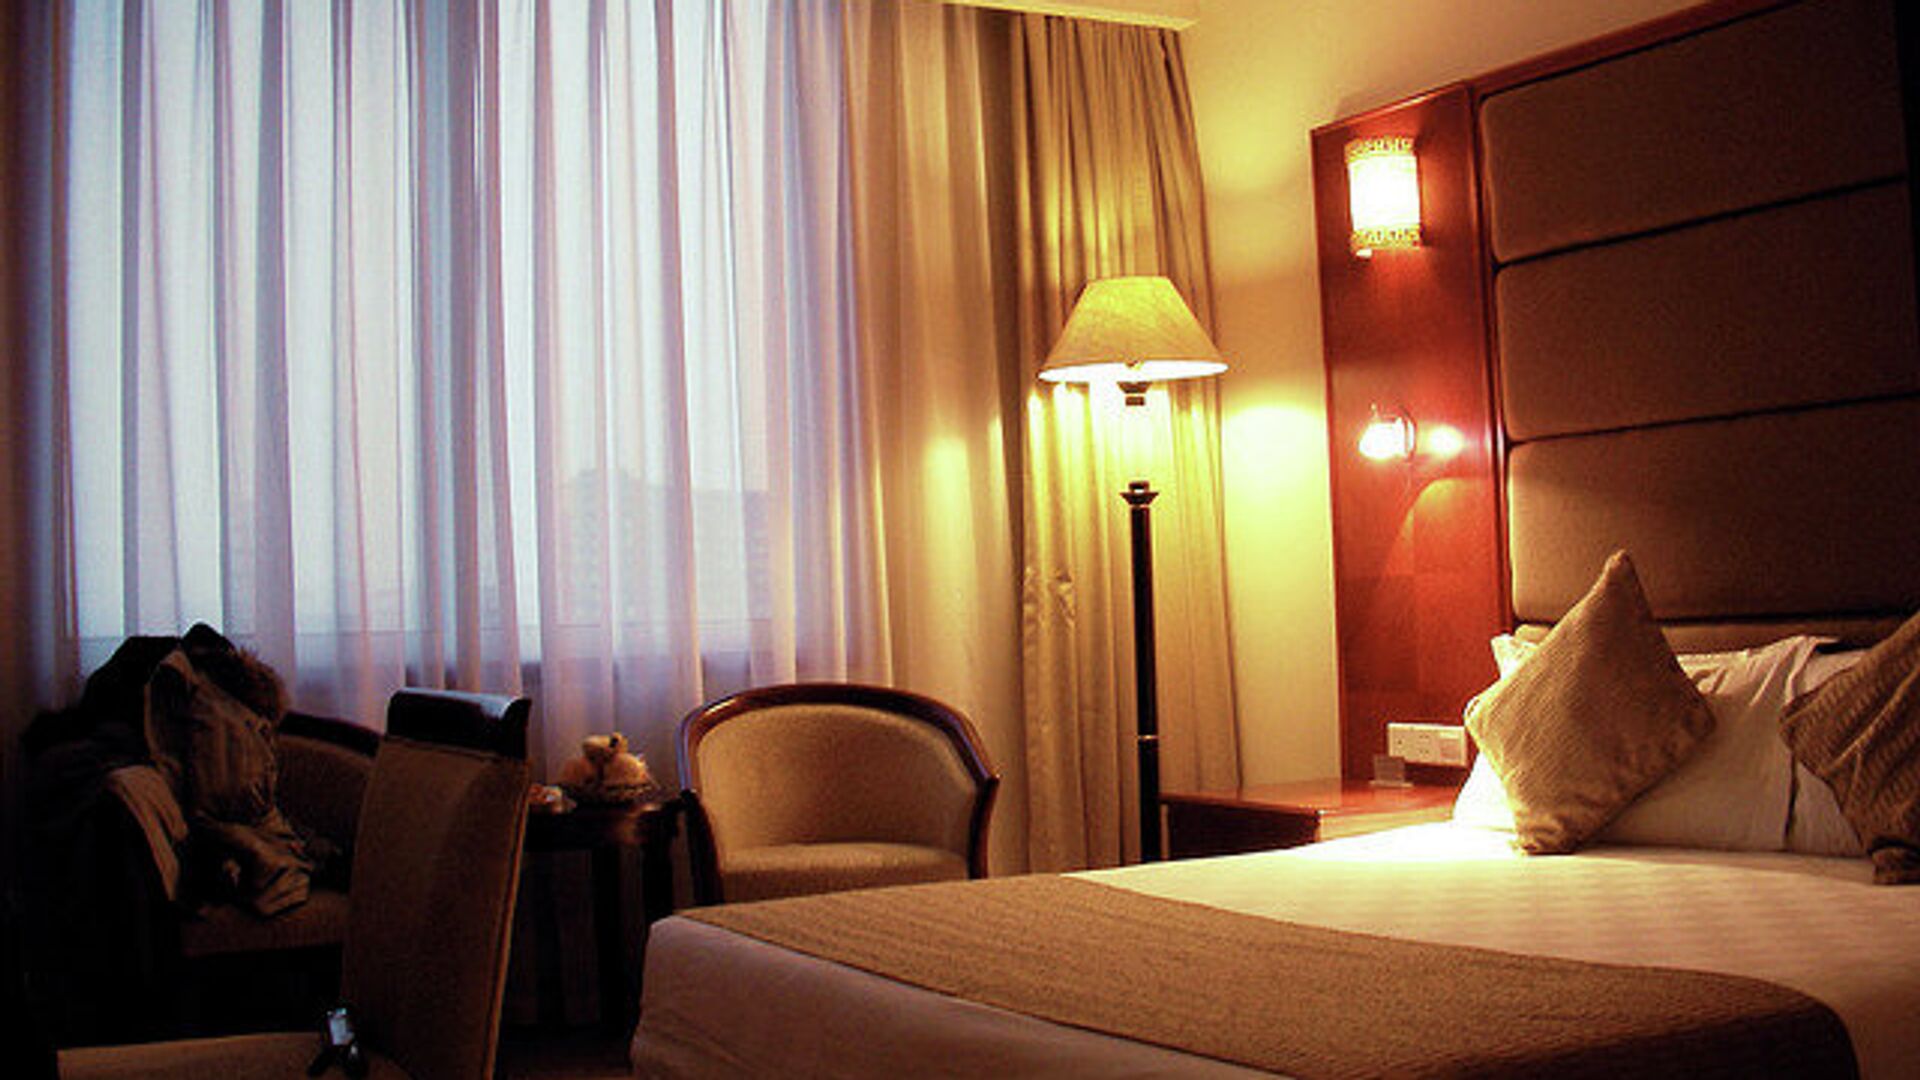 Covid 19 отель. Отель с территорией в МО. Пекин отель Гранд. Светильники из гостиницы Пекин. Гостиница обязана